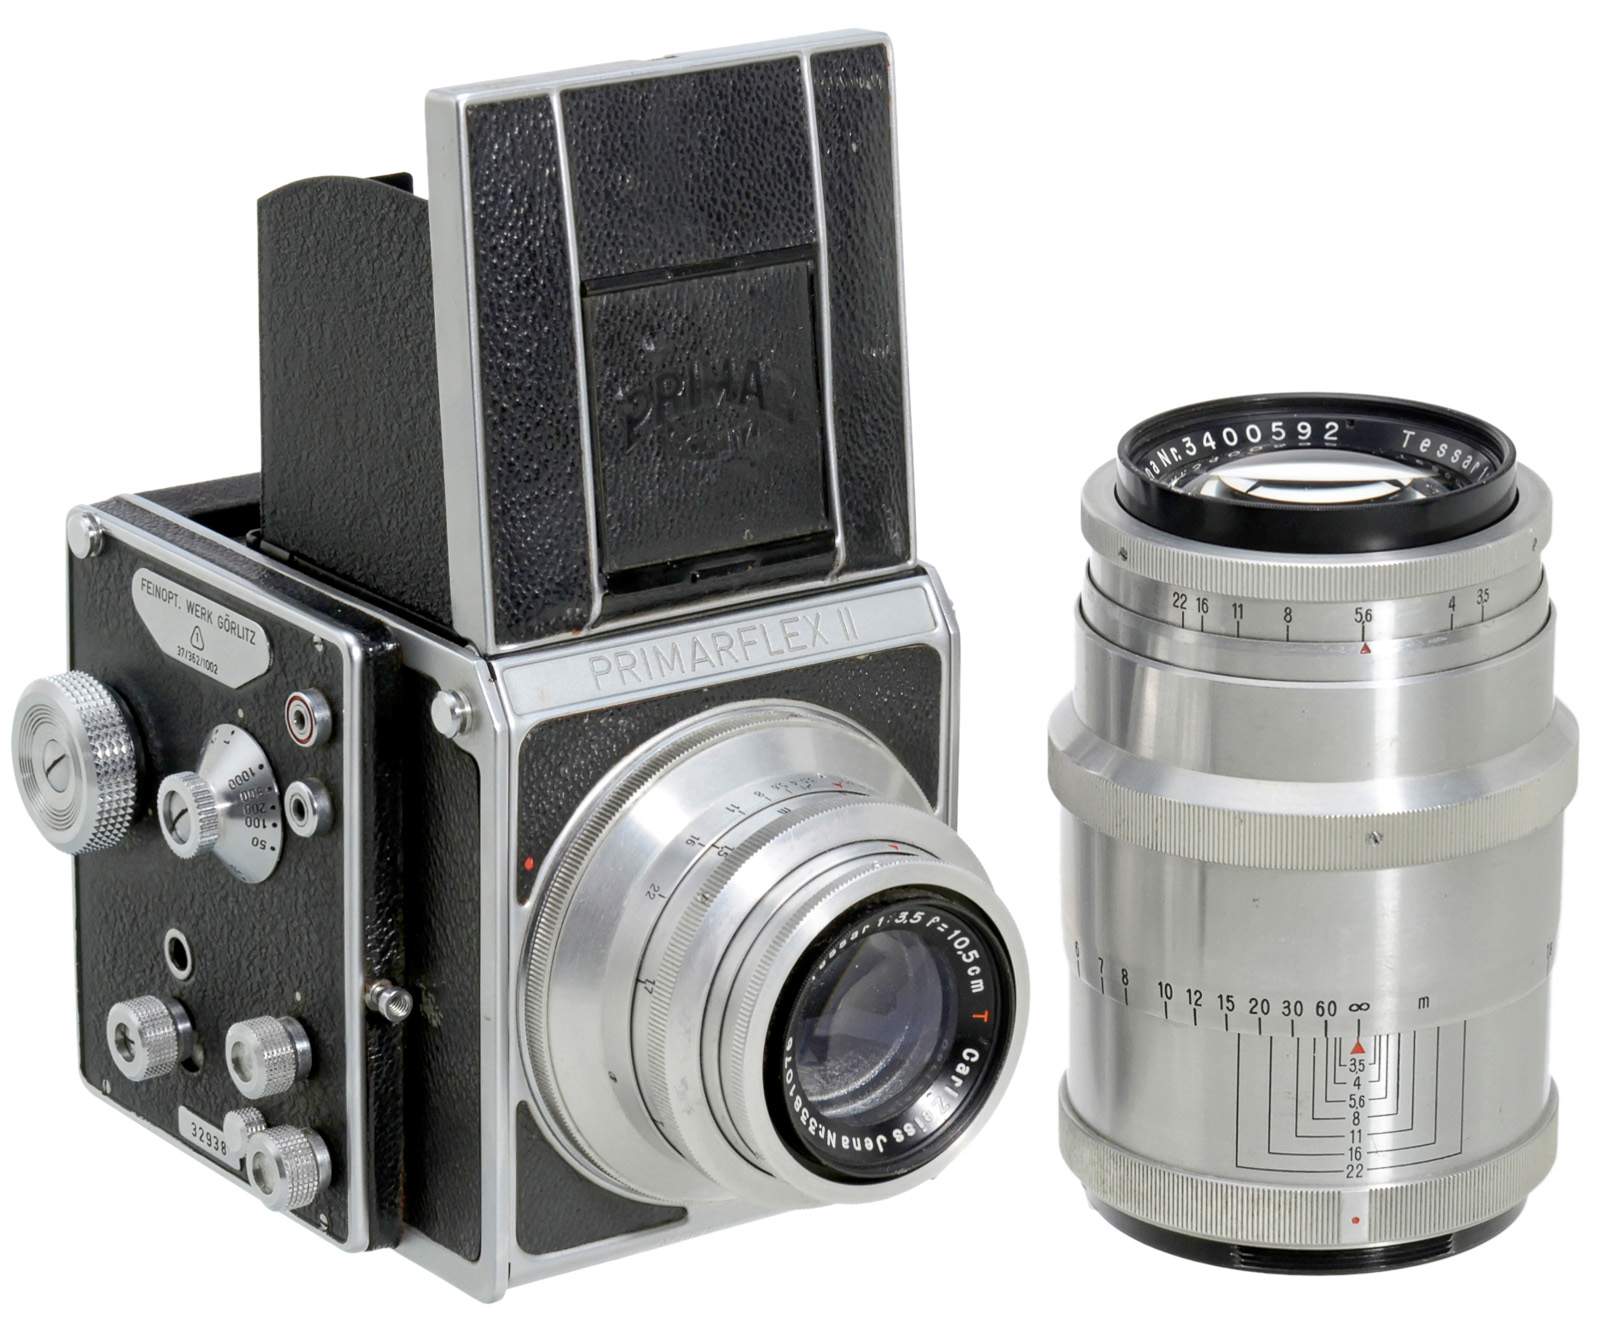 Primarflex II with 2 Lenses, c. 1950 Feinopt. Werk Görlitz. No. 32938, size 6 x 6 cm, focal plane